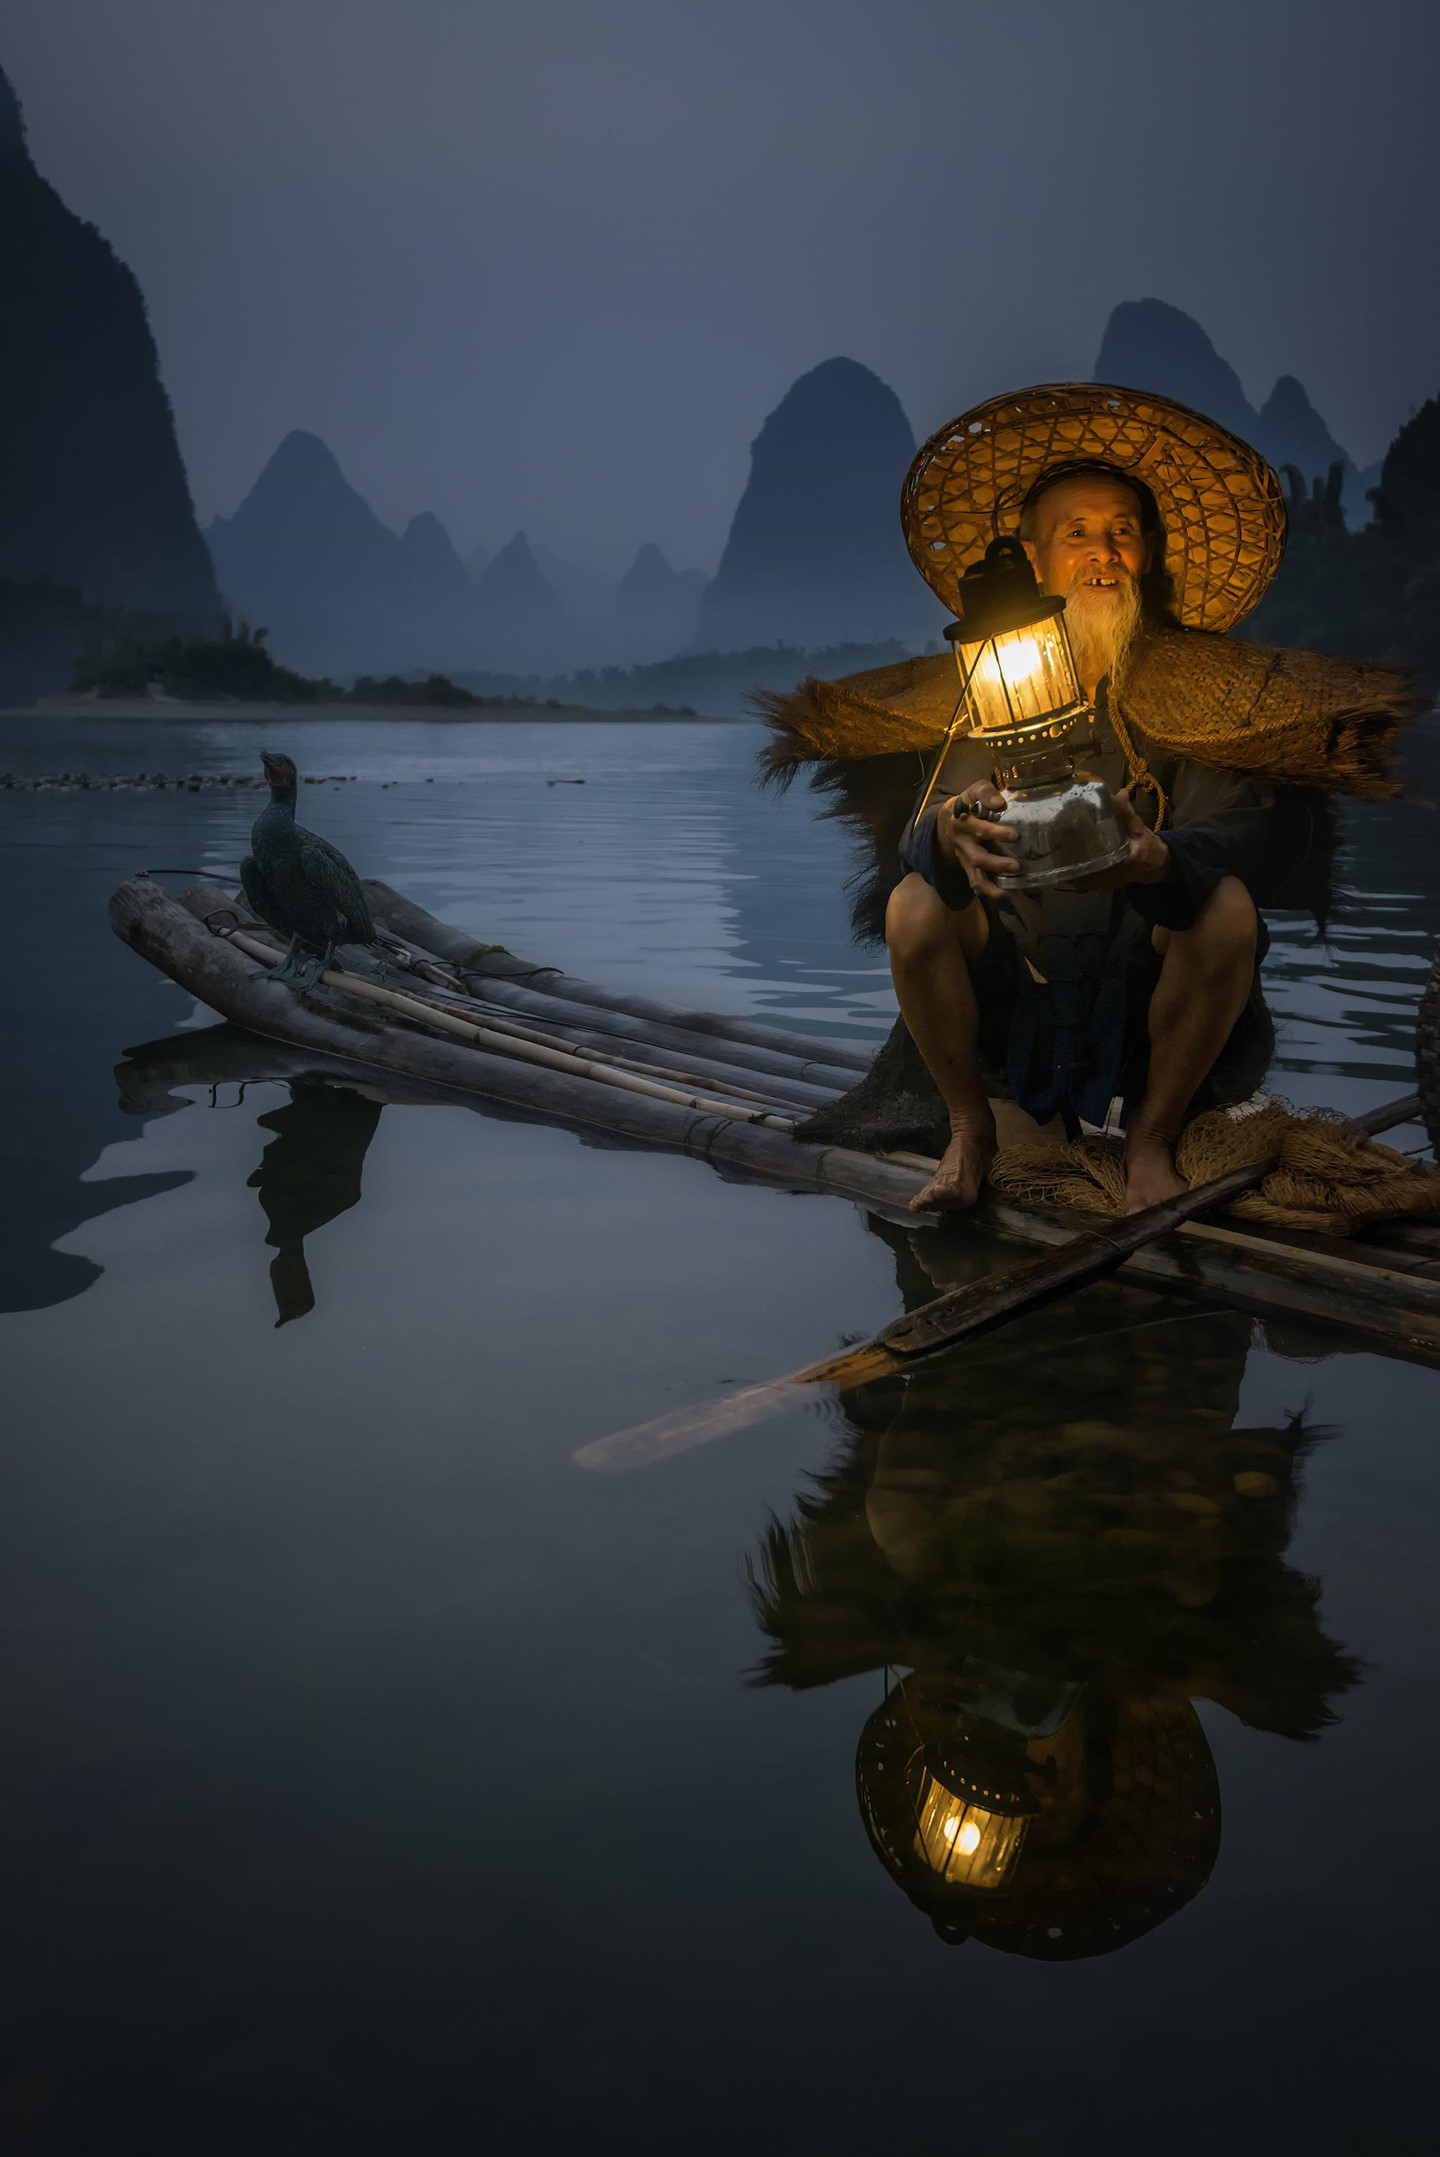  Bắt cá bằng chim cốc là phương thức cổ xưa, xuất hiện vào khoảng năm 960 sau Công Nguyên tại một số quốc gia như Trung Quốc và Nhật Bản. Hiện tại, các ngư dân duy trì chủ yếu để thu hút khách du lịch. Ảnh: Bobby Joshi.